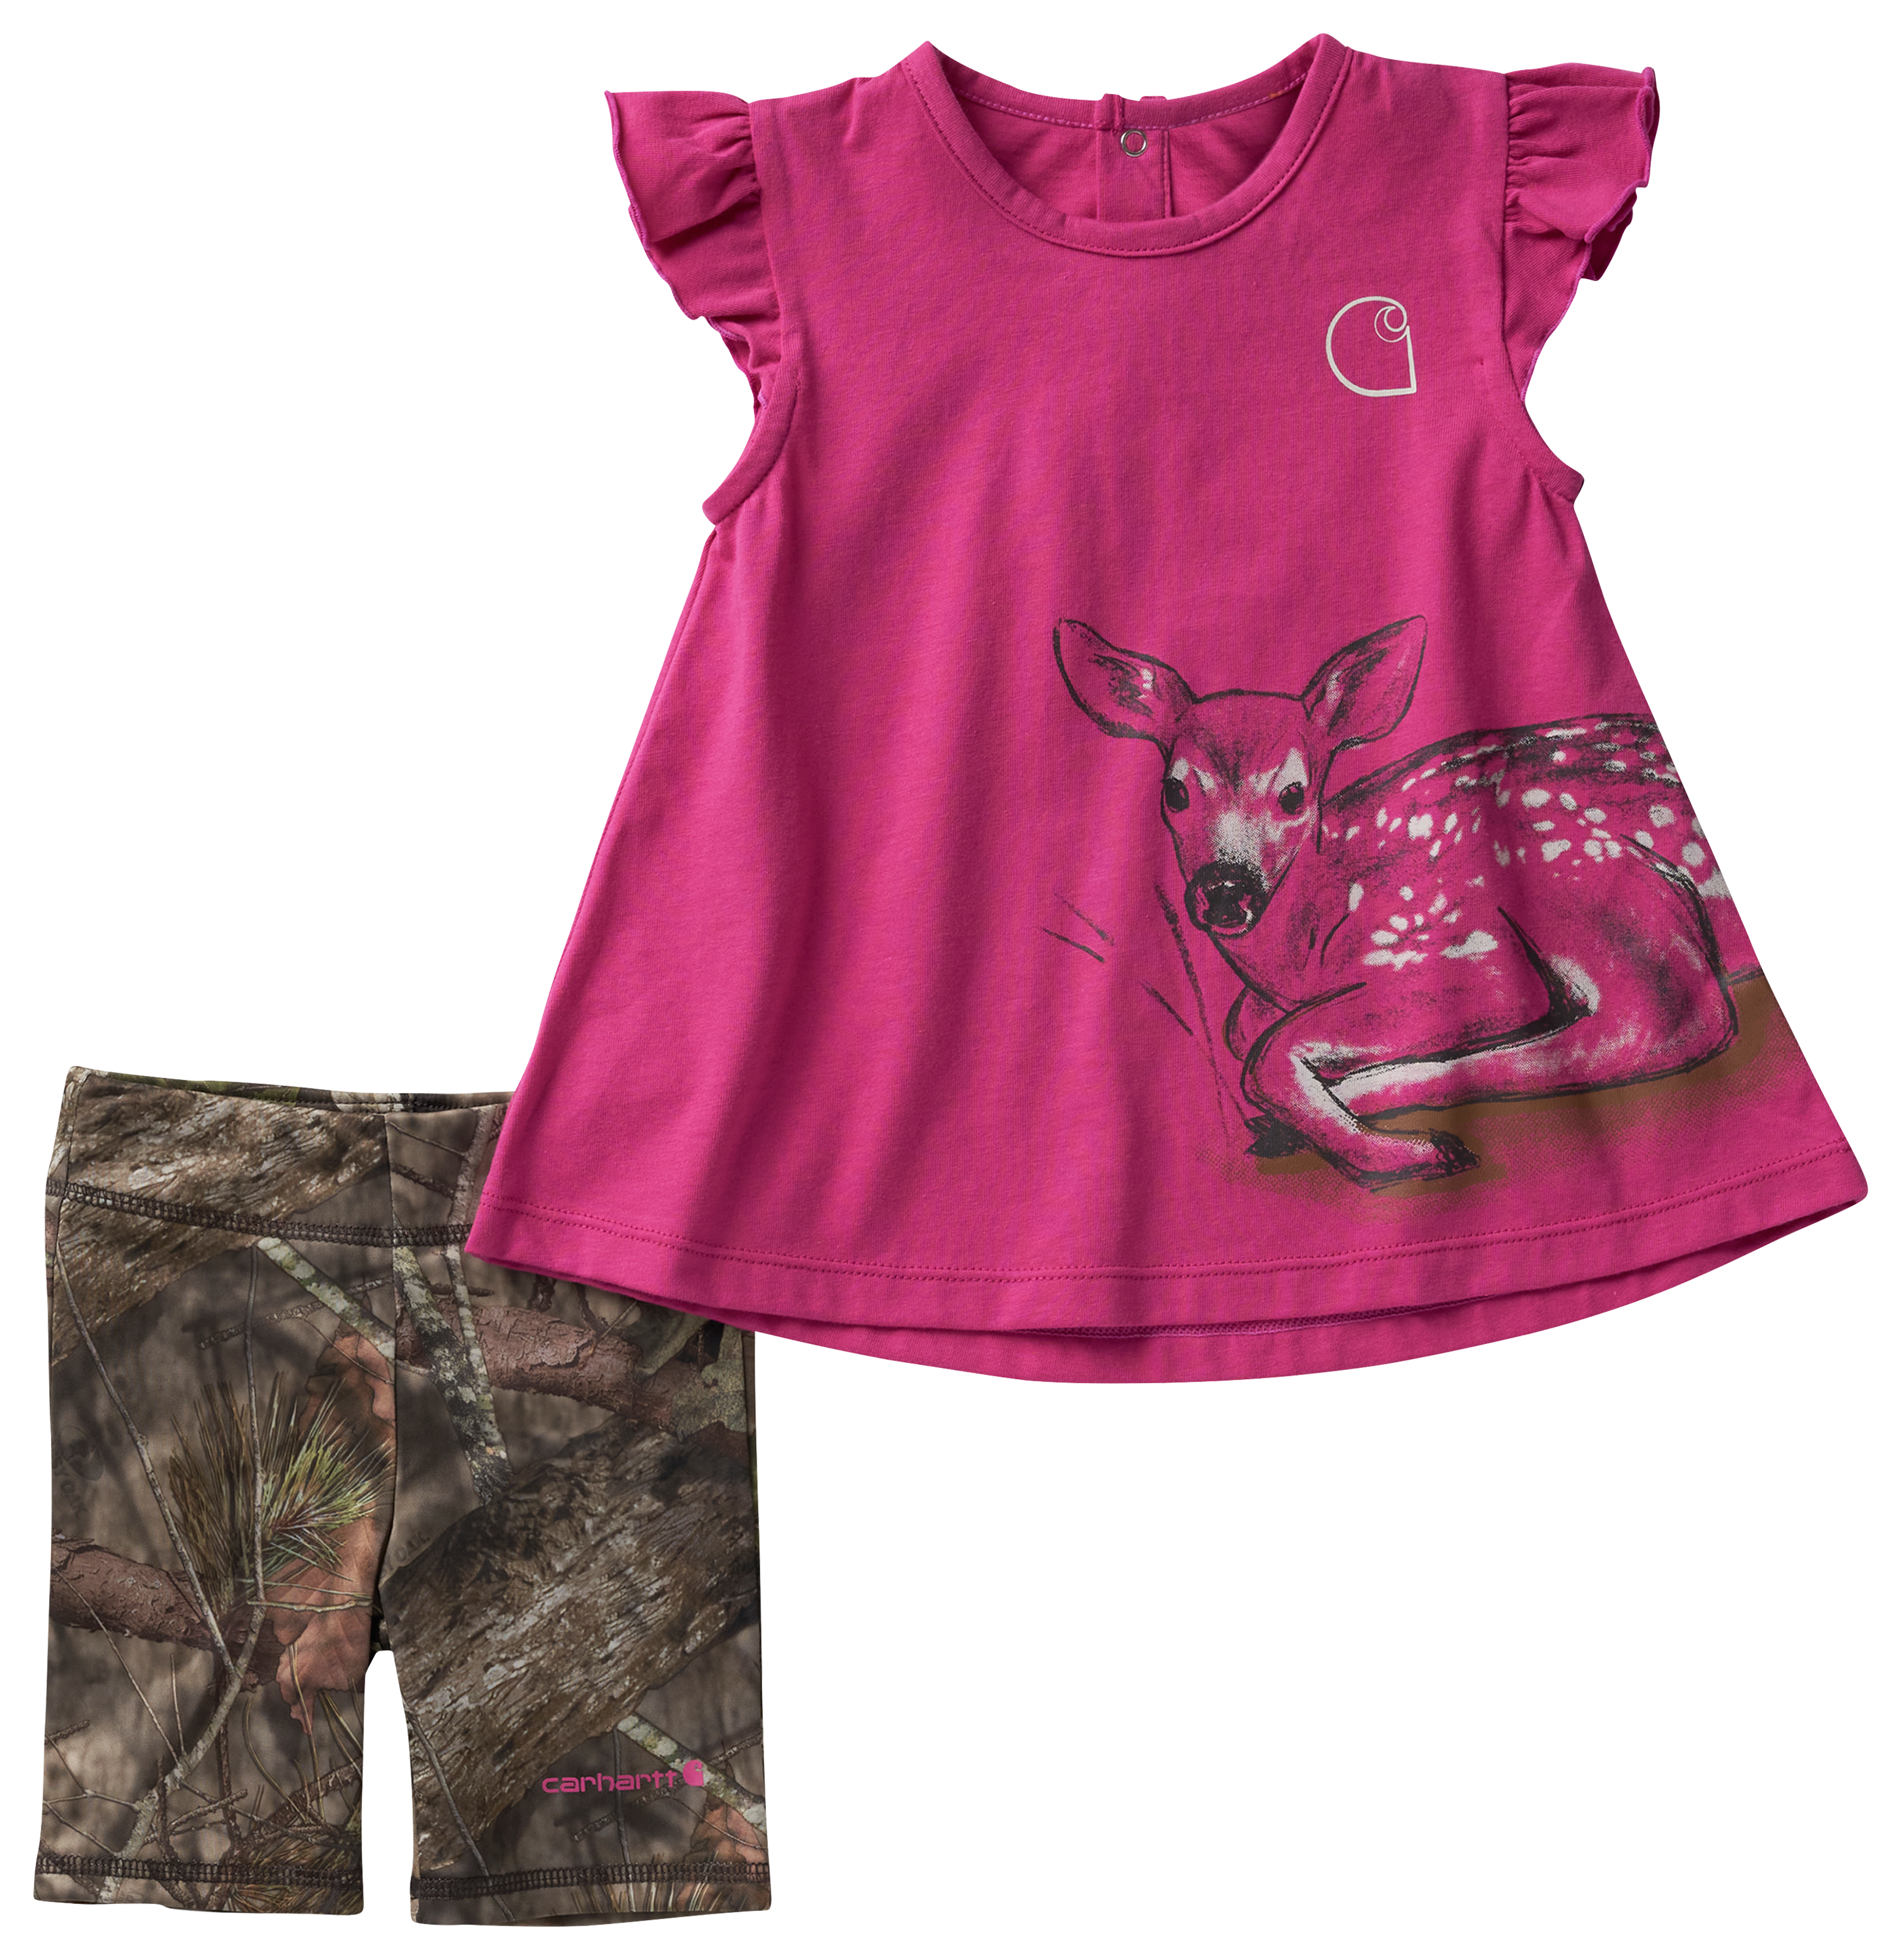 Carhartt Deer Short Sleeve Shirt and Camo Print Legging Shorts Set for Babies 3 Months